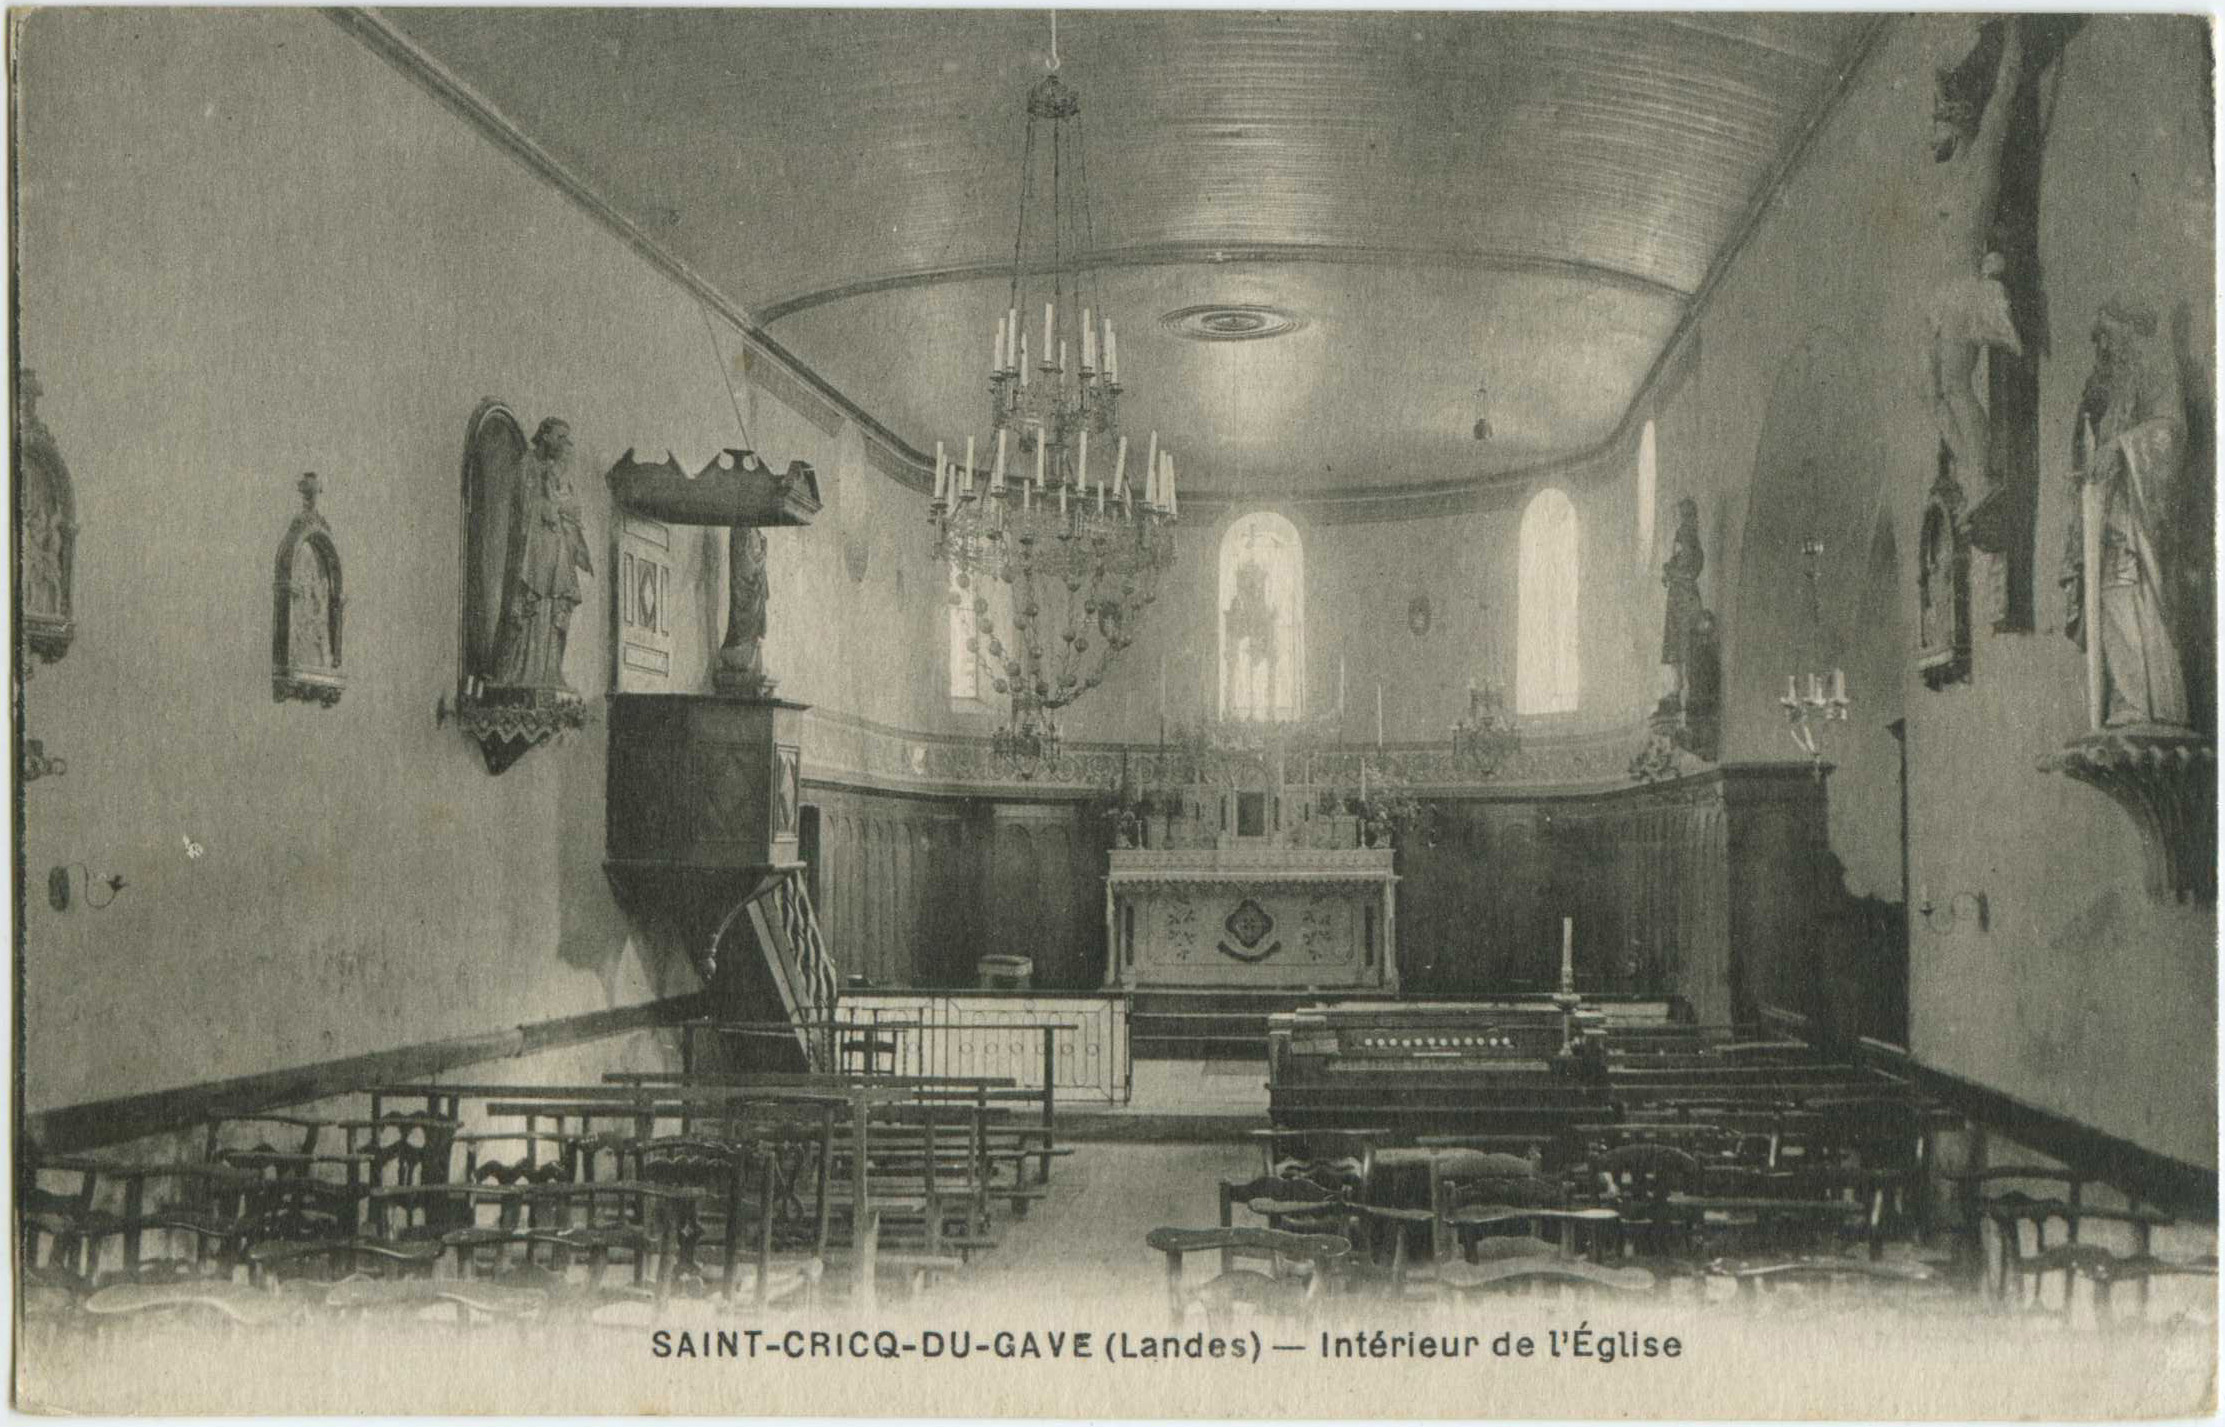 Saint-Cricq-du-Gave - Intérieur de l'Église